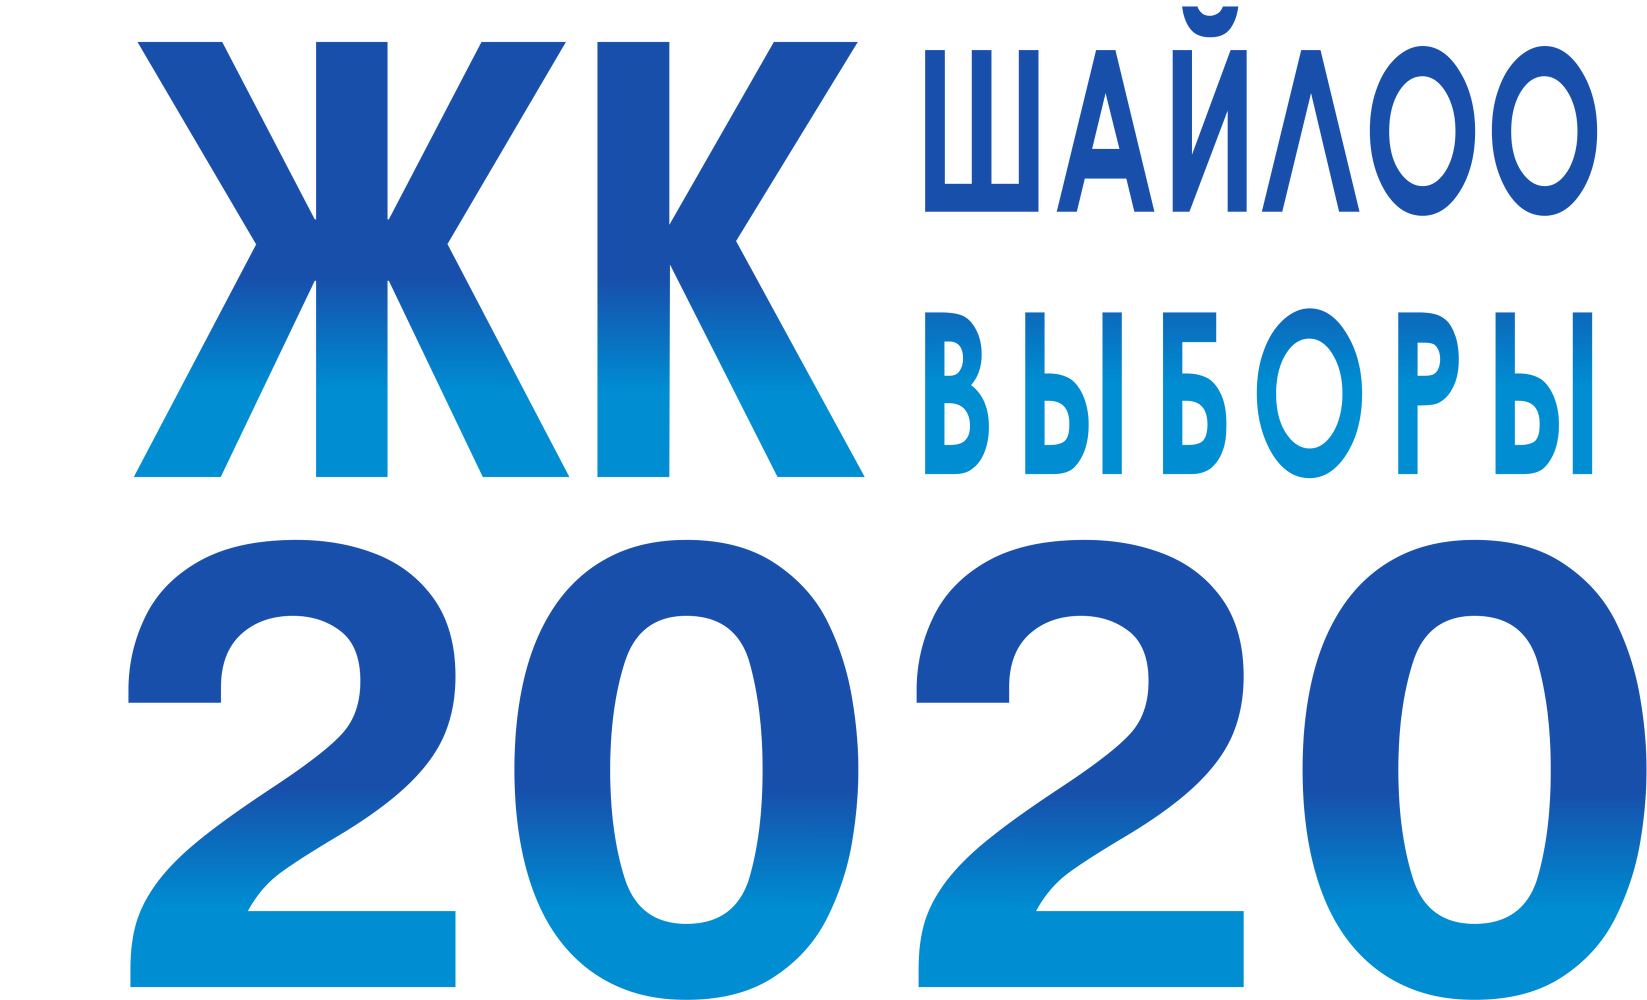 Выборы 2020 отзывы. Шайлоо 2021. Шайлоо 2020. Шайлоо логотип. Выборы 2020 логотип.